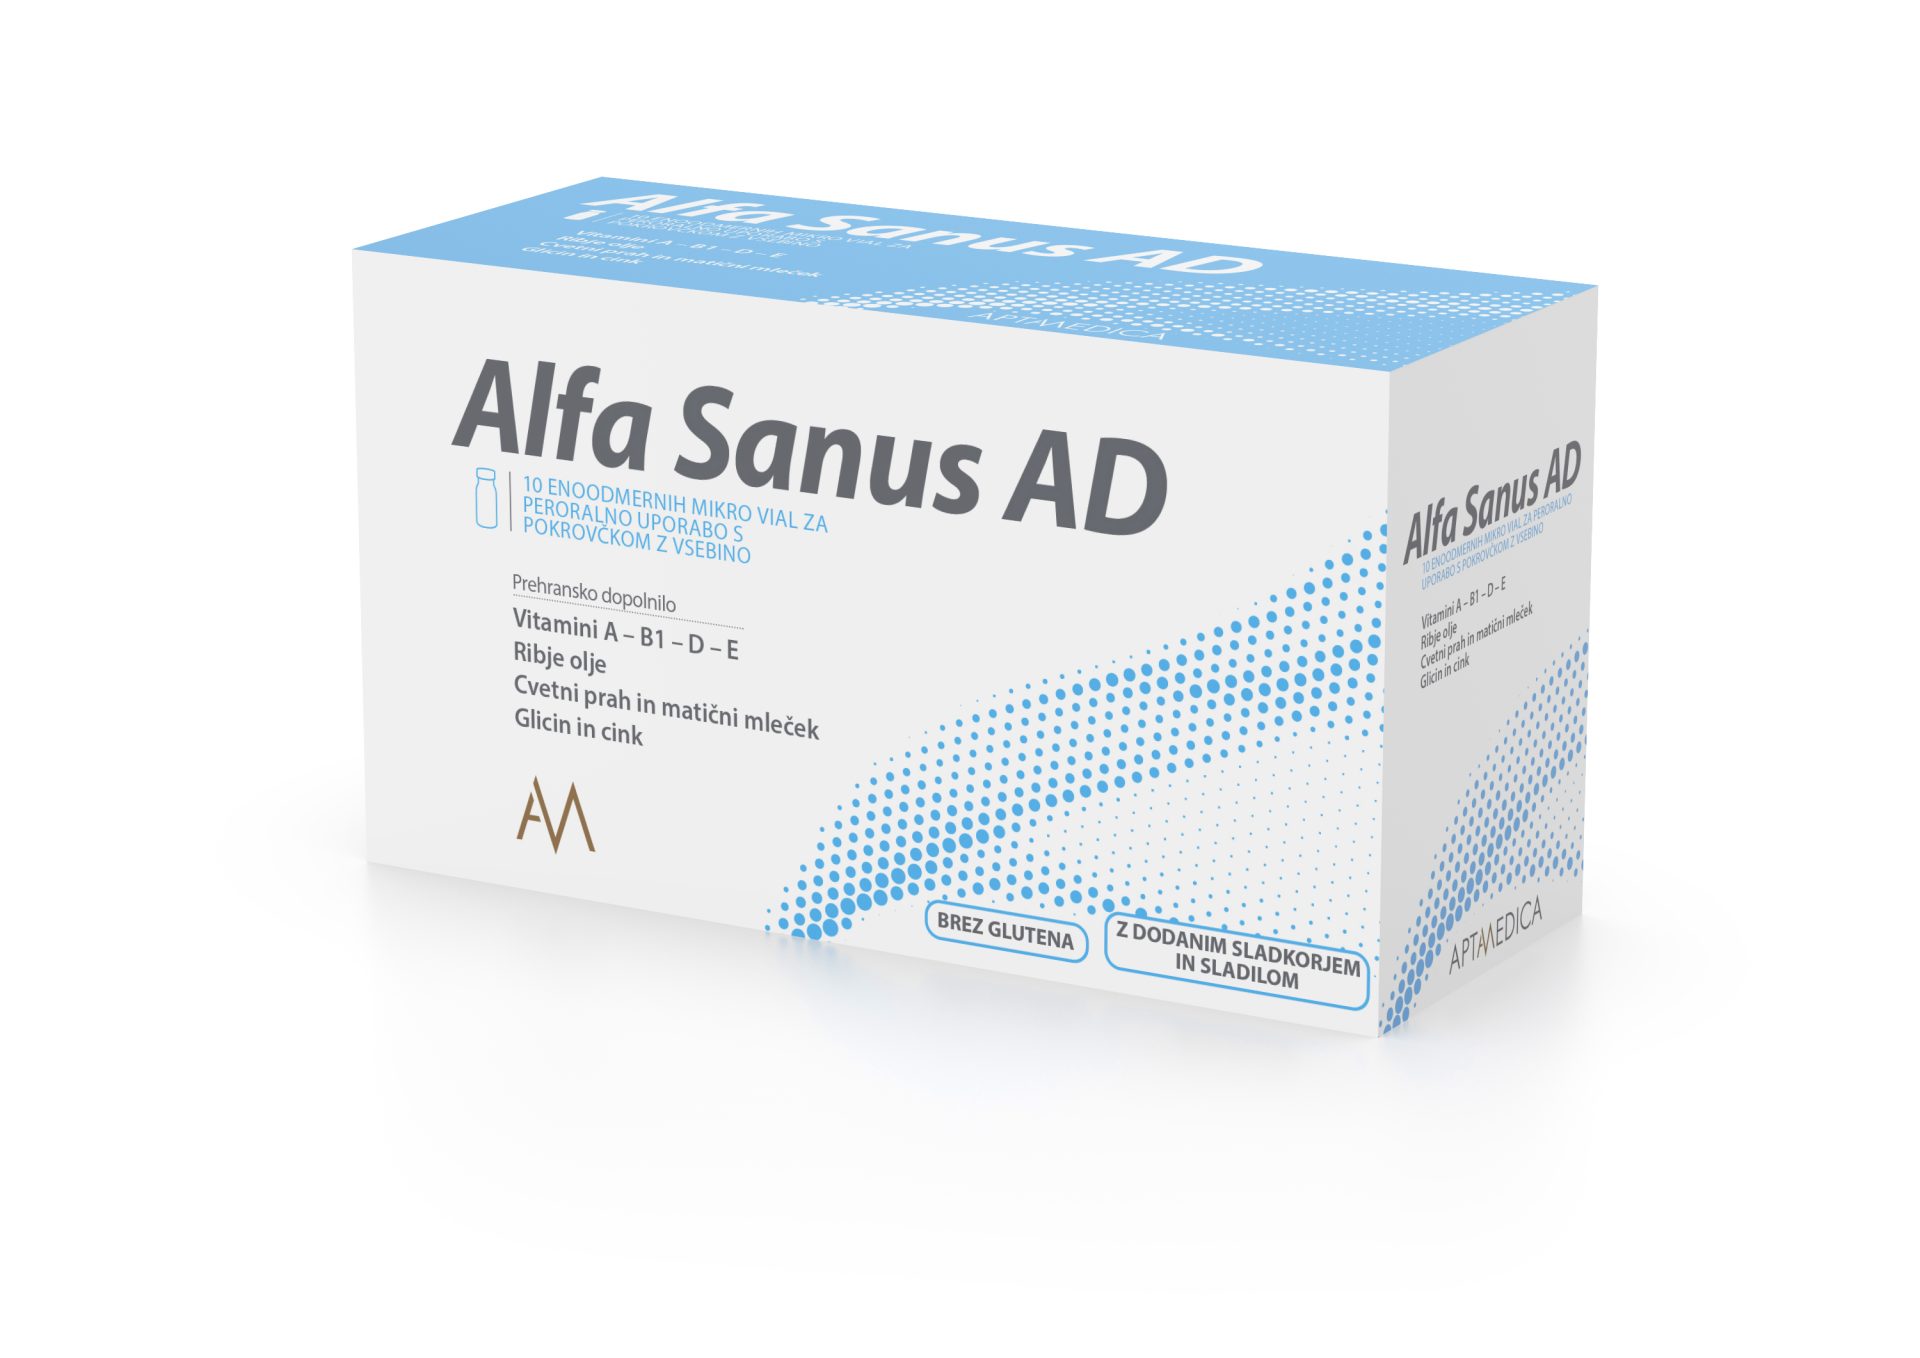 Alfa Sanus AD mikro viale za peroralno uporabo, 10 vial